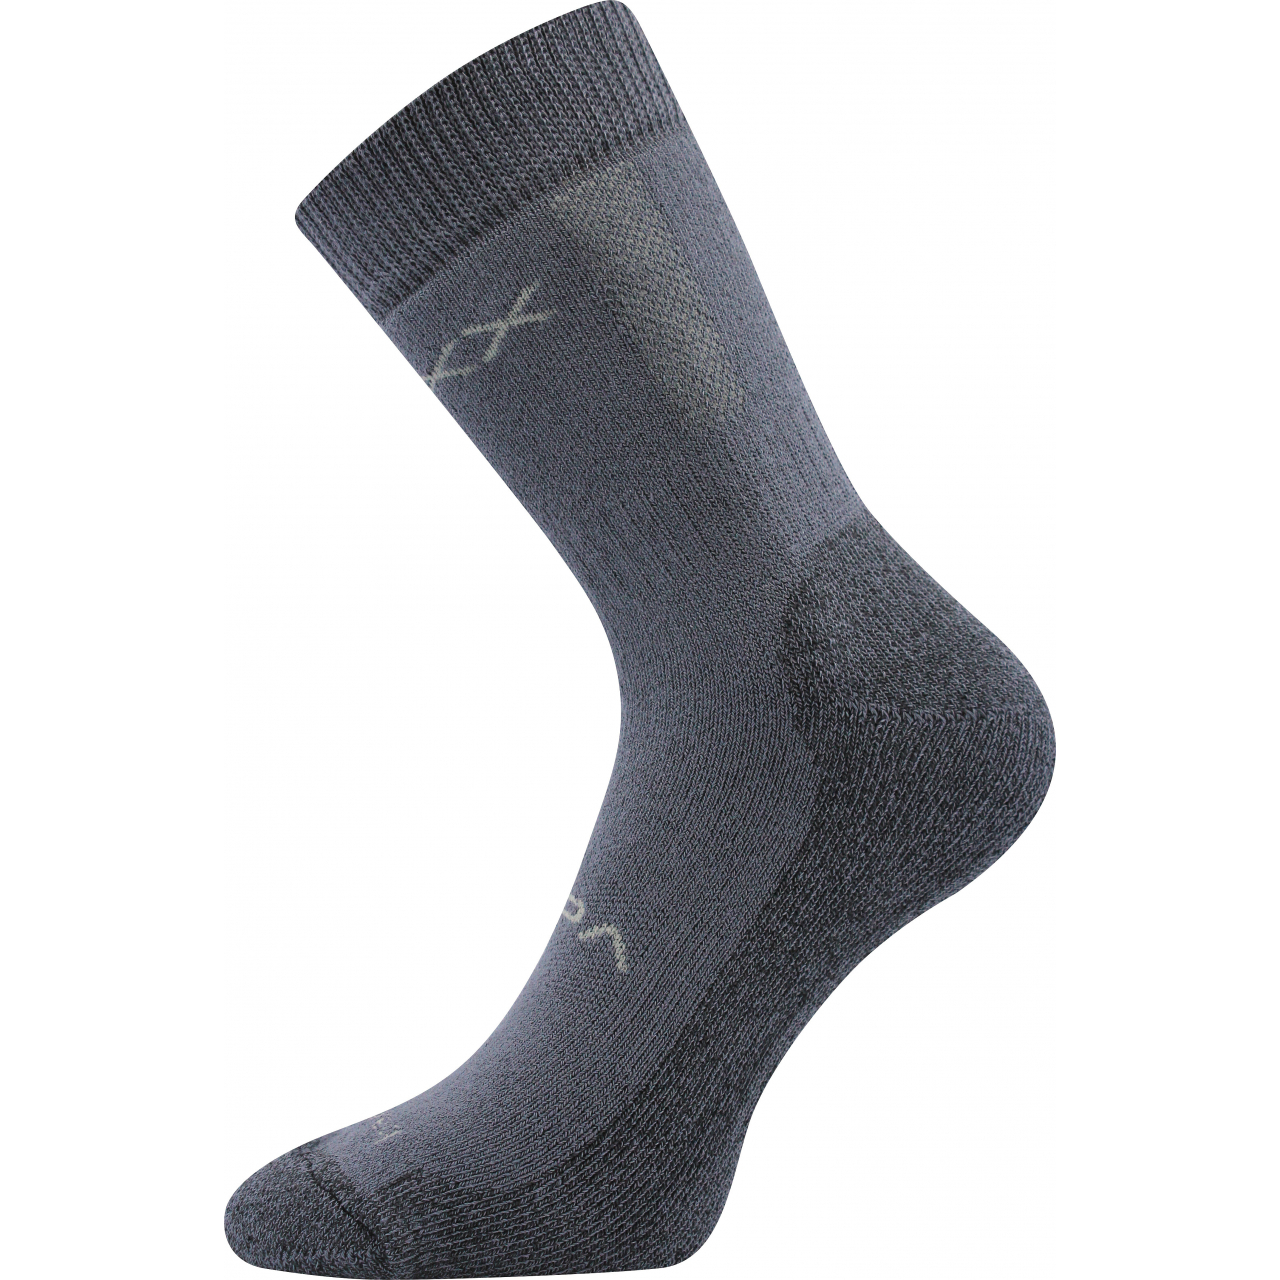 Ponožky silné unisex Voxx Bardee - tmavě šedé, 43-46